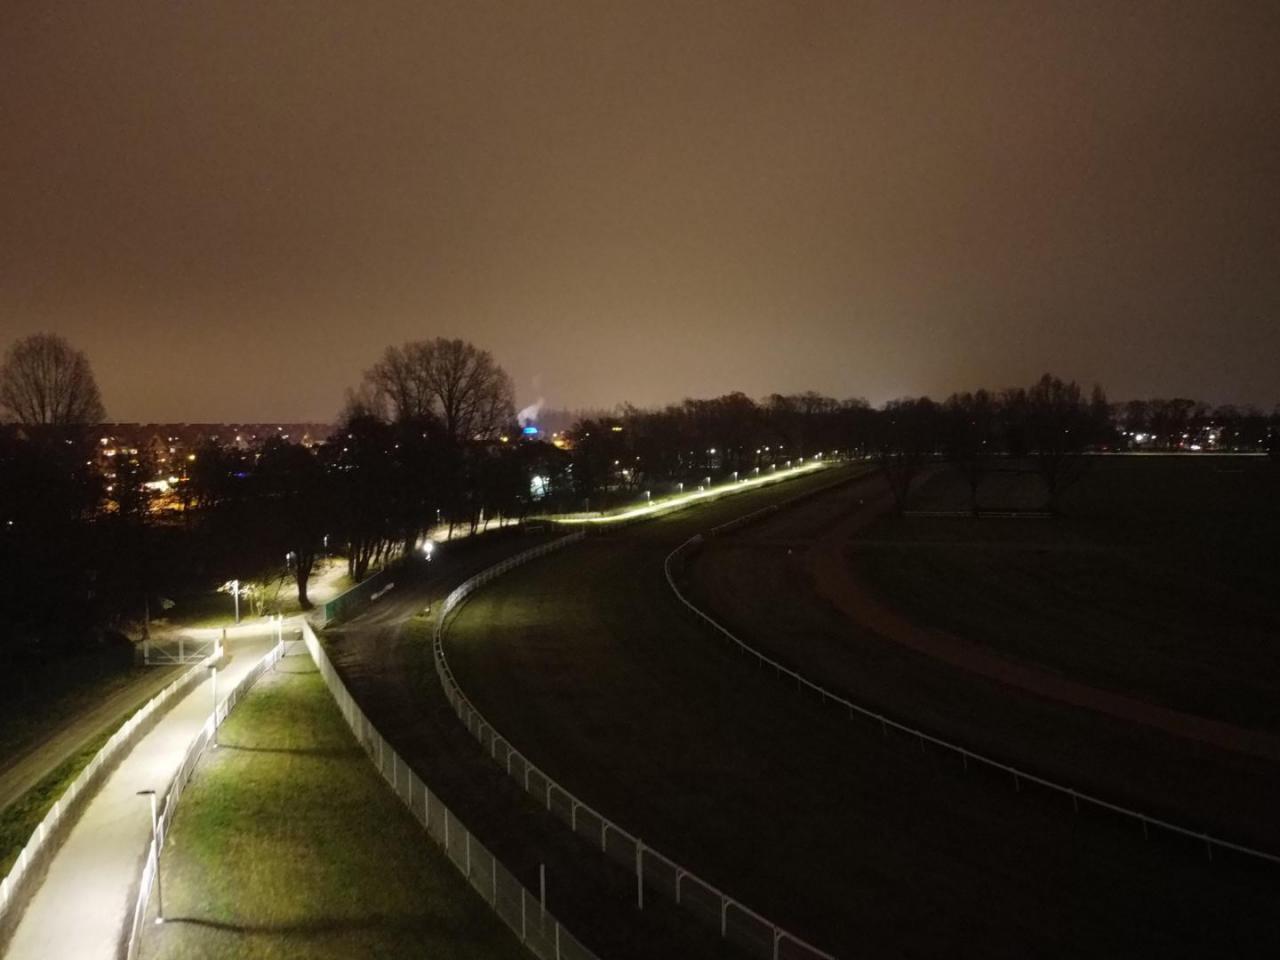 Ścieżka pieszo-biegowa wokół toru wyścigów konnych na Partynicach oświetlona [Foto]